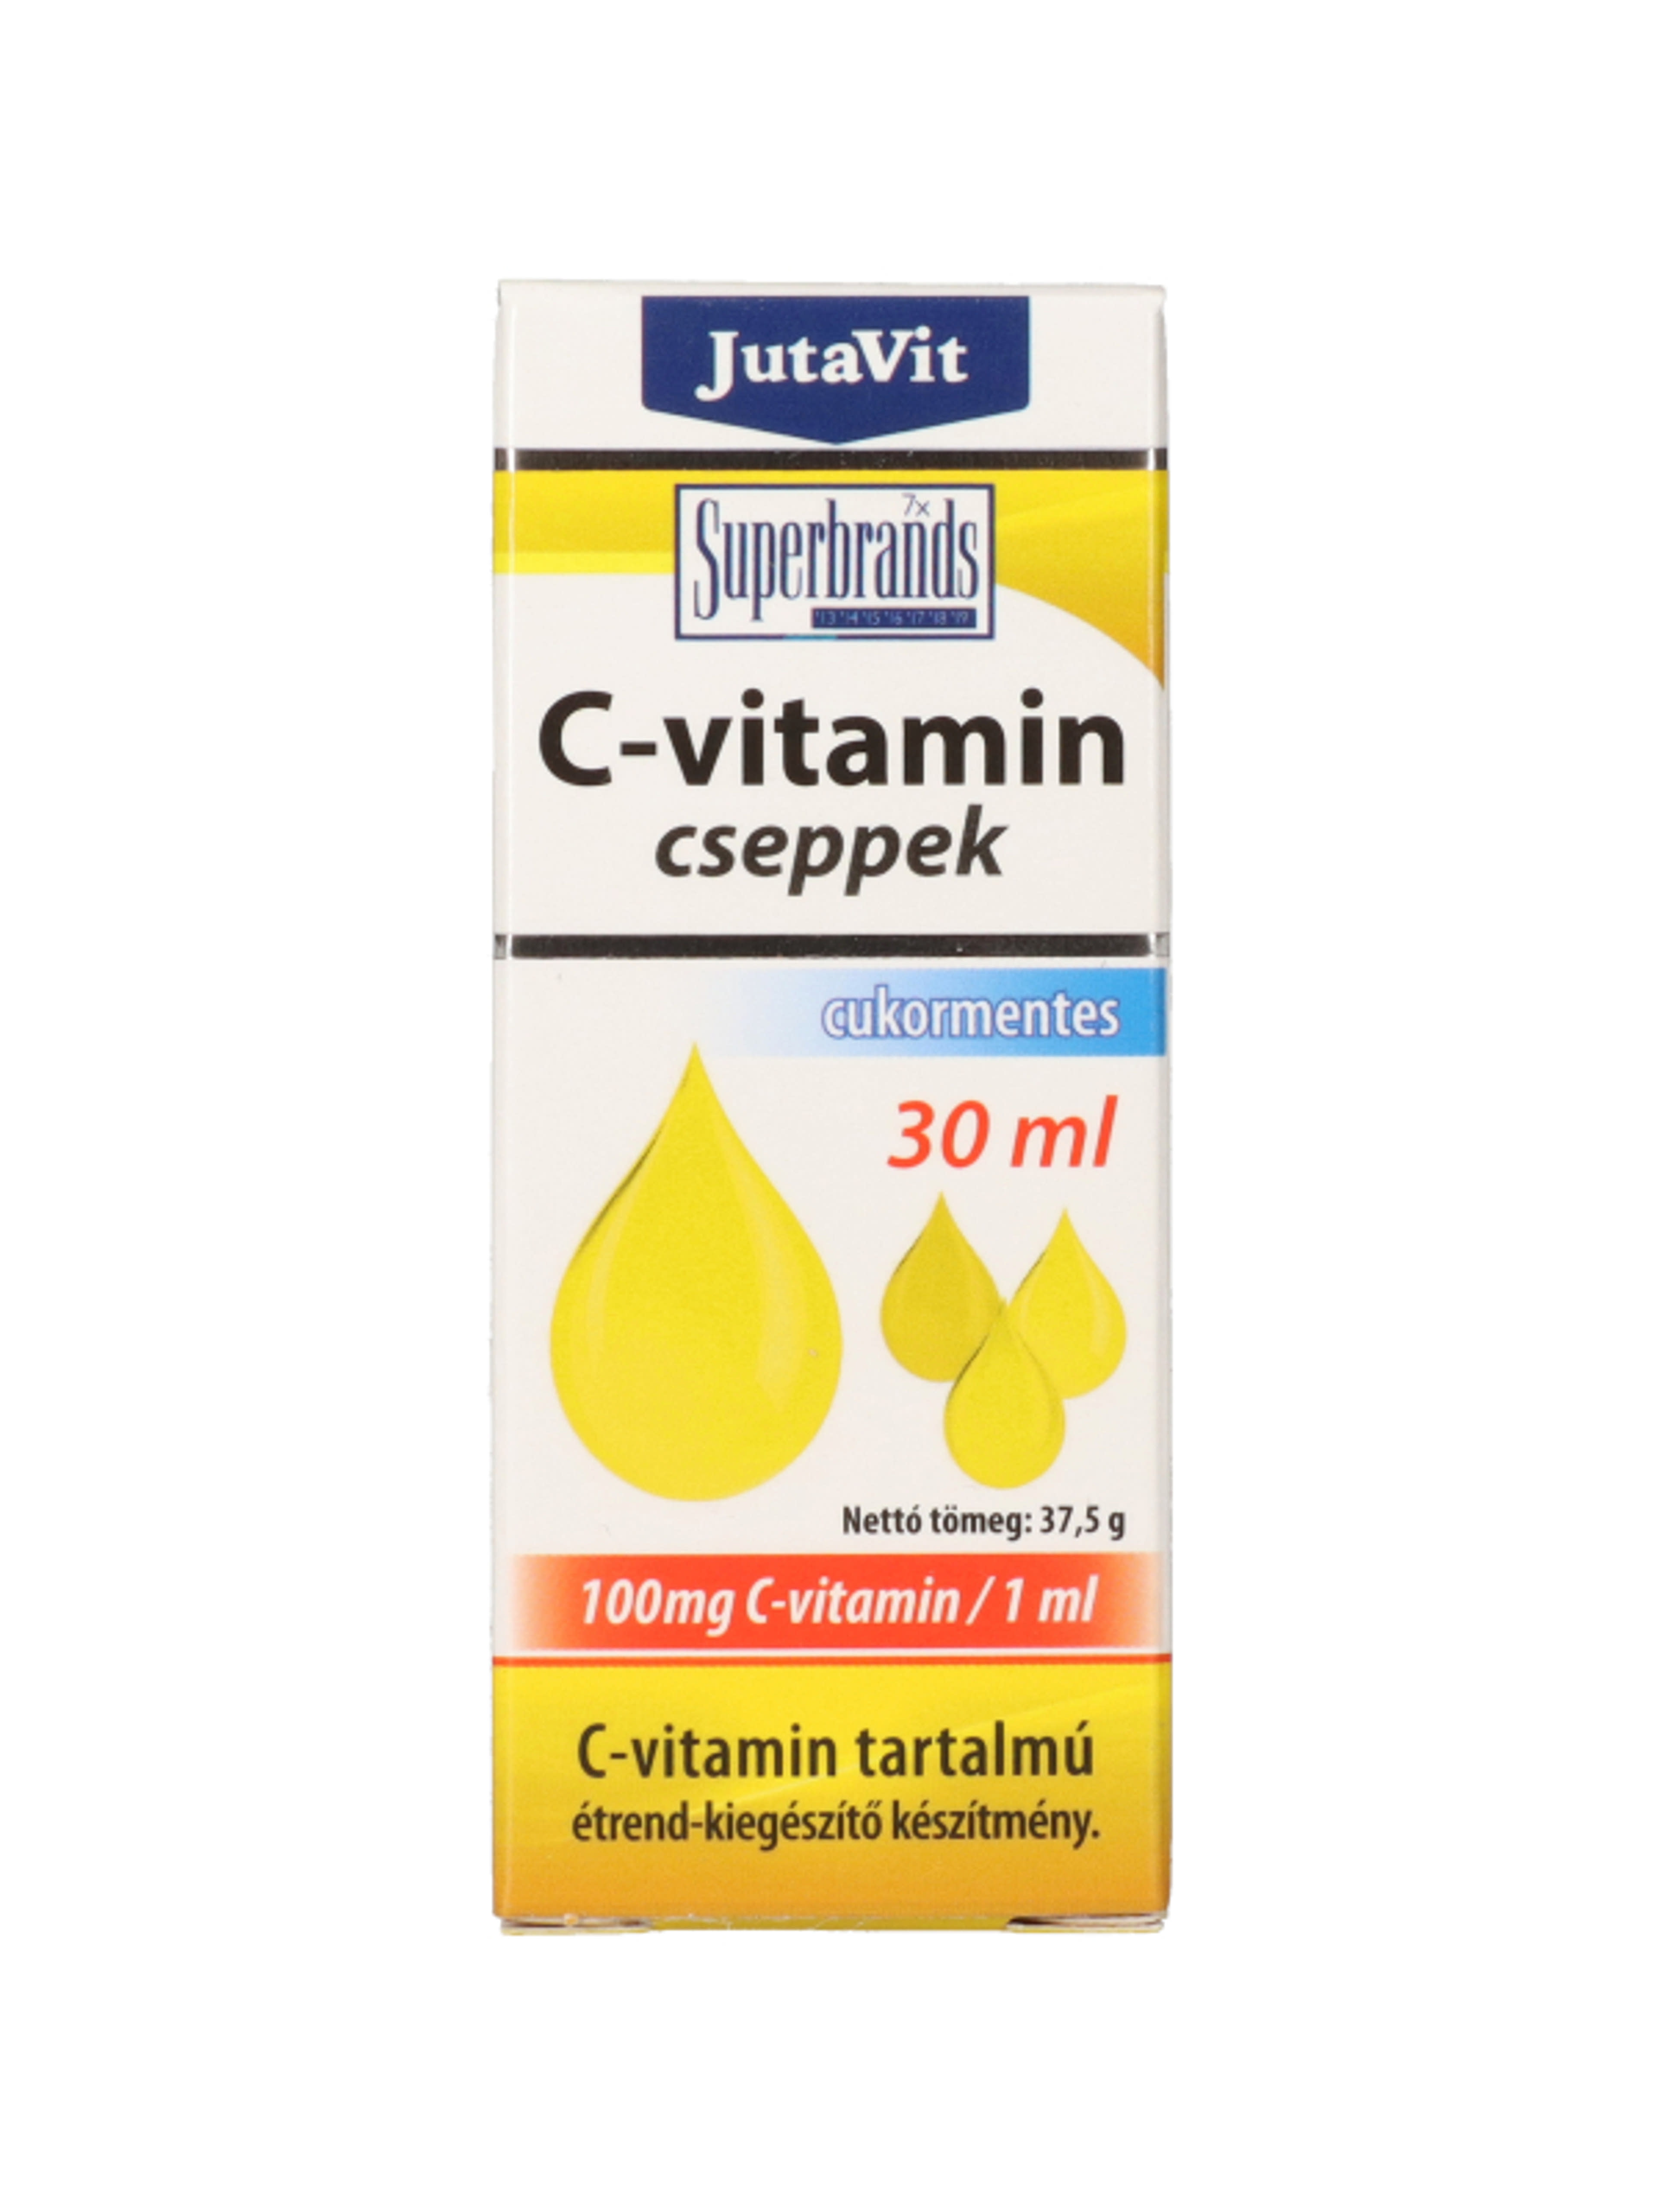 JutaVit C-vitamin csepp 100mg/ml - 30 ml